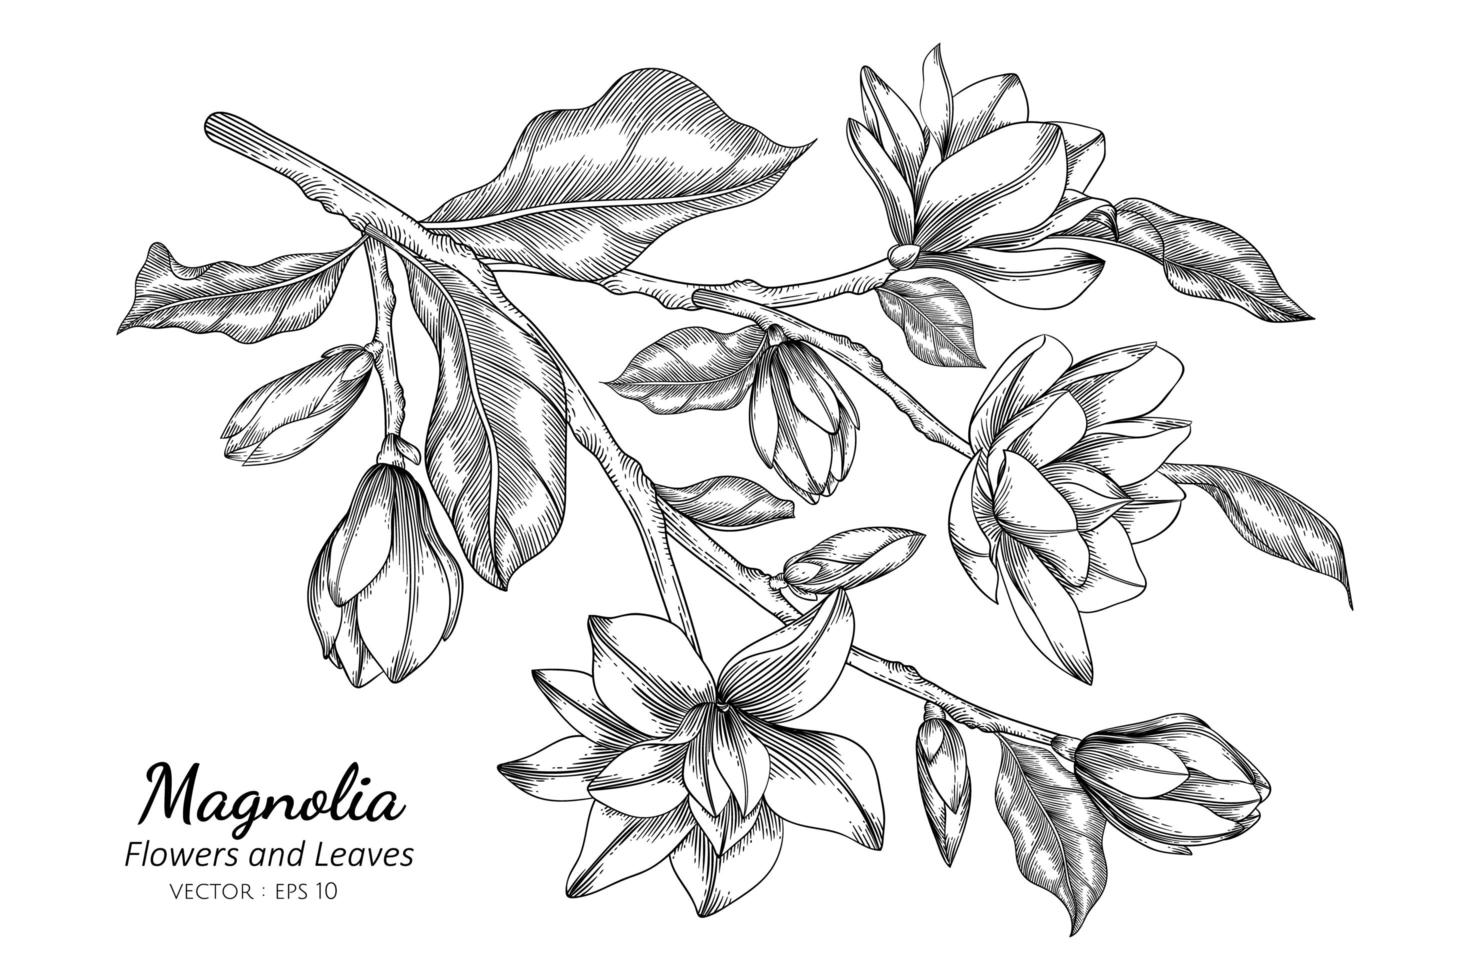 Magnolienblumen- und Blattzeichnungsillustration mit Strichzeichnungen auf weißem Hintergrund vektor